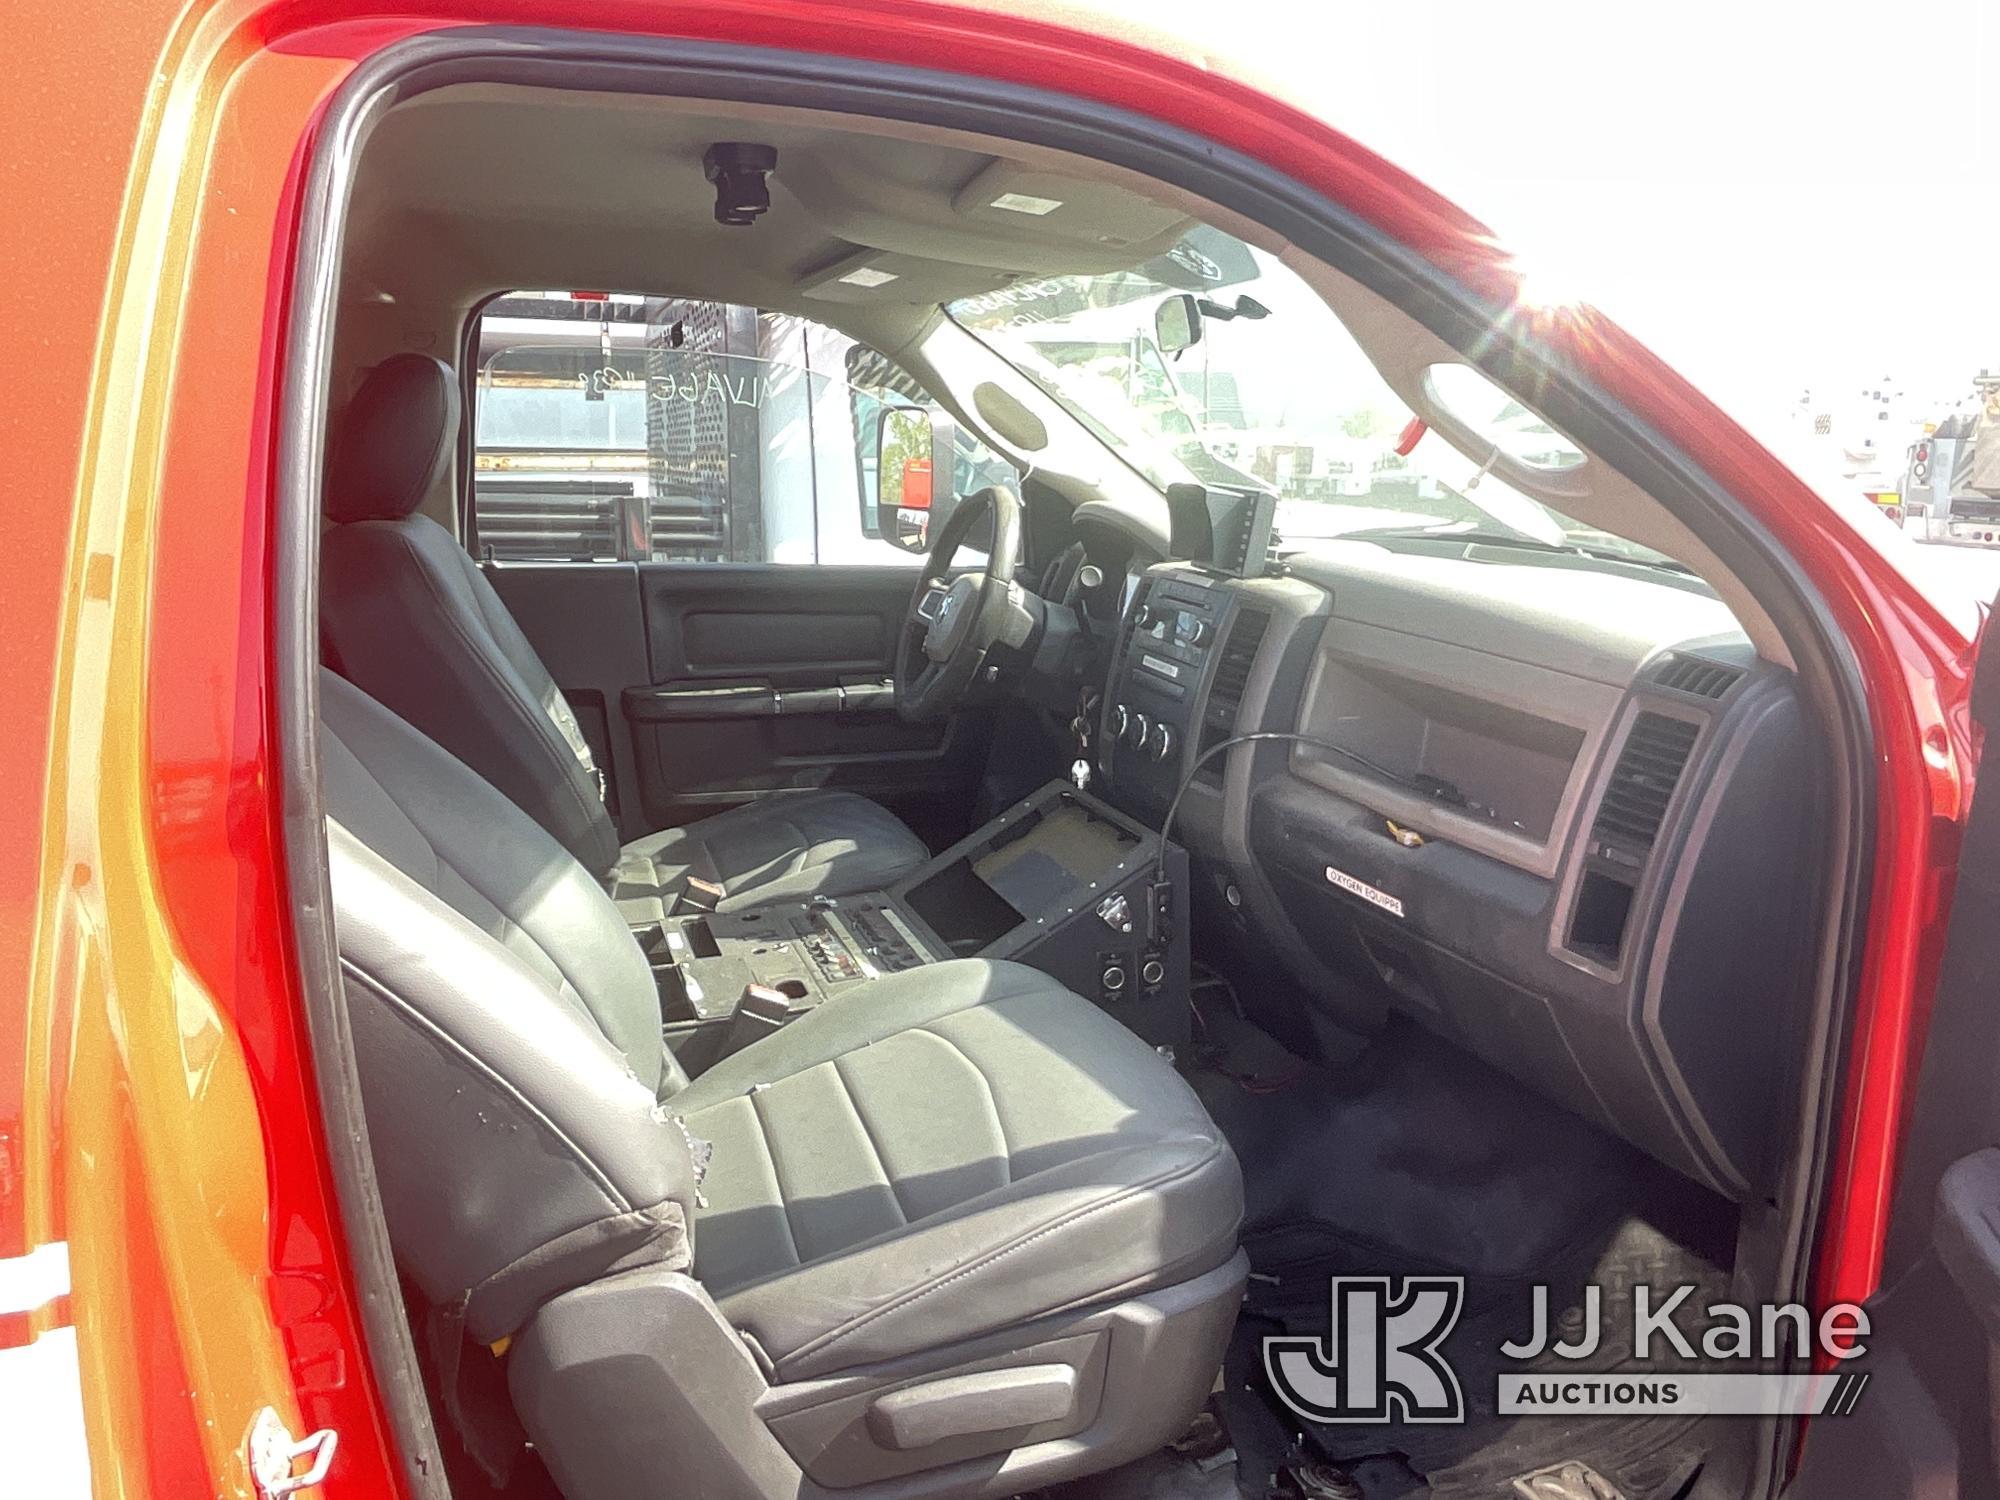 (Jurupa Valley, CA) 2011 Dodge Ram 4500 Regular Cab Pickup 2-DR Runs & Moves